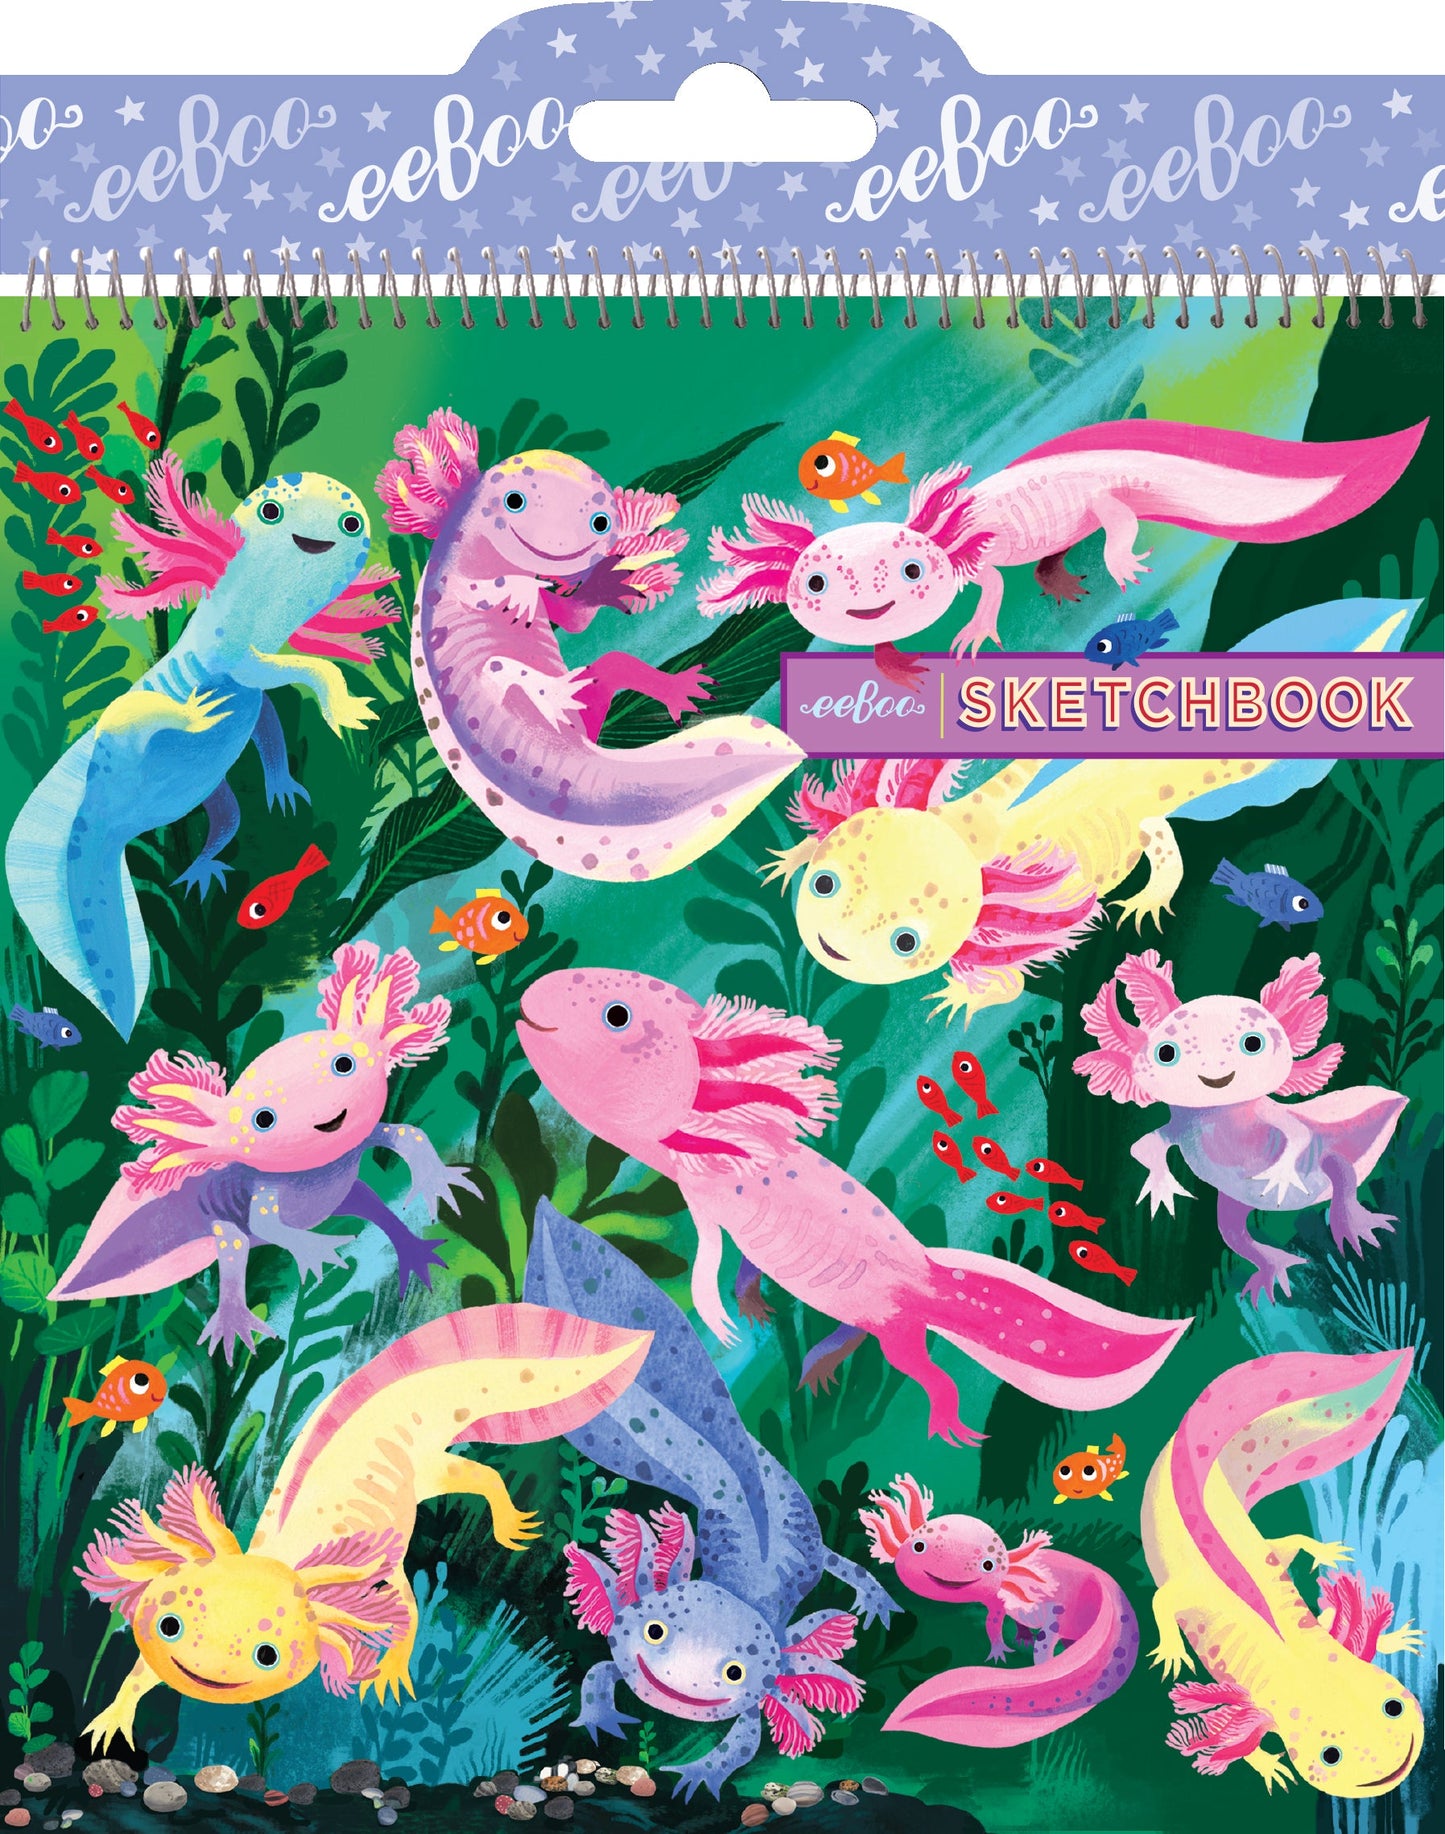 Axolotl Square Sketchbook by eeBoo | Unique Fun Gifts